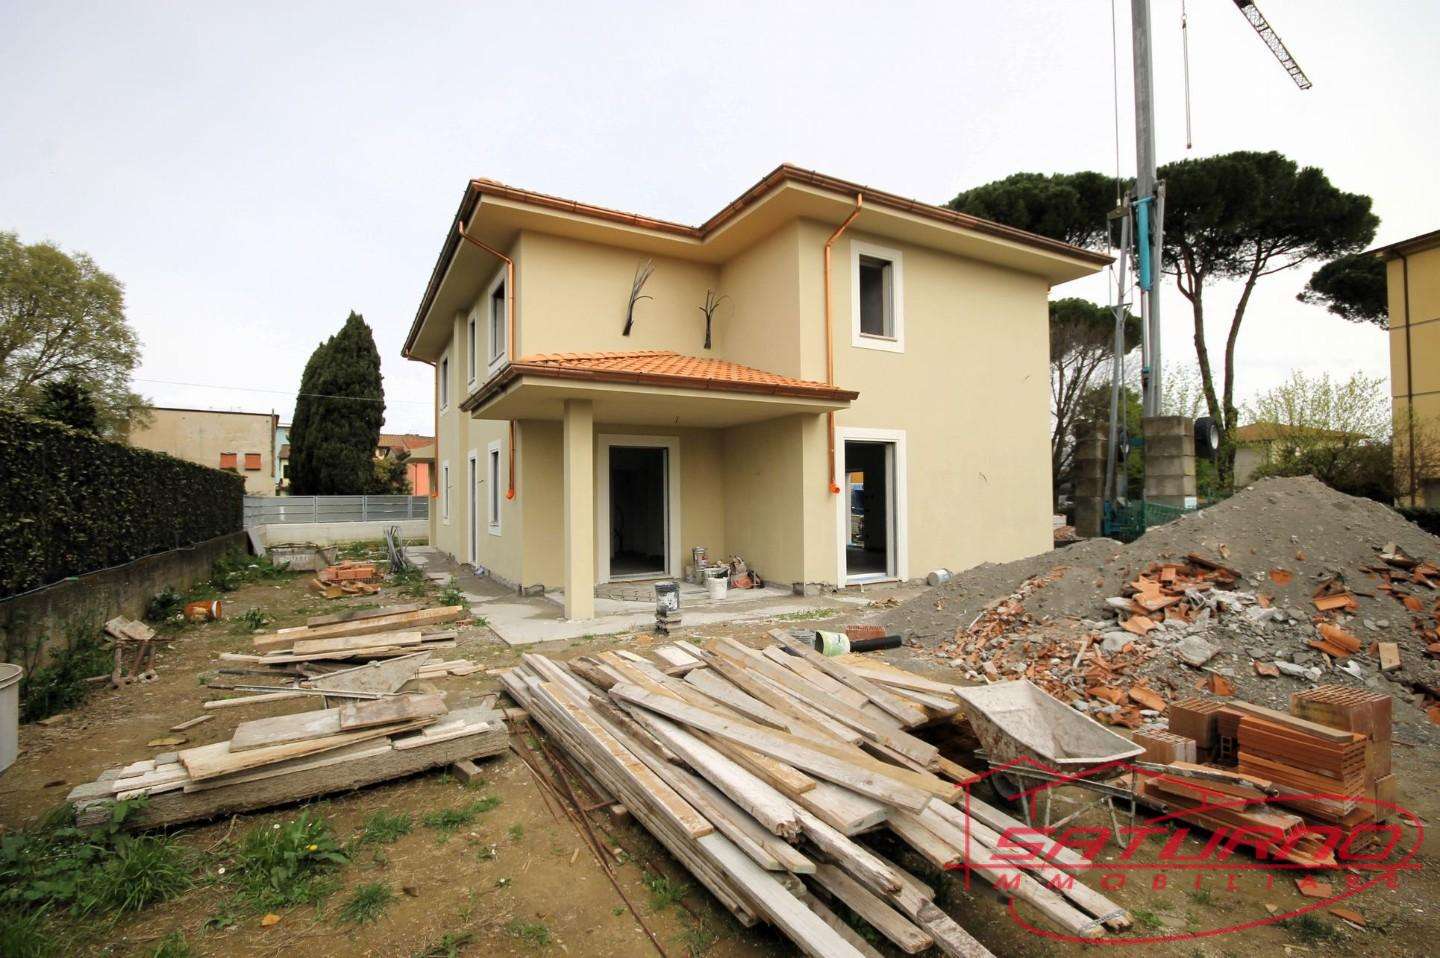 Casa Bi - Trifamiliare in Vendita a Capannori Via del Pelo, 25